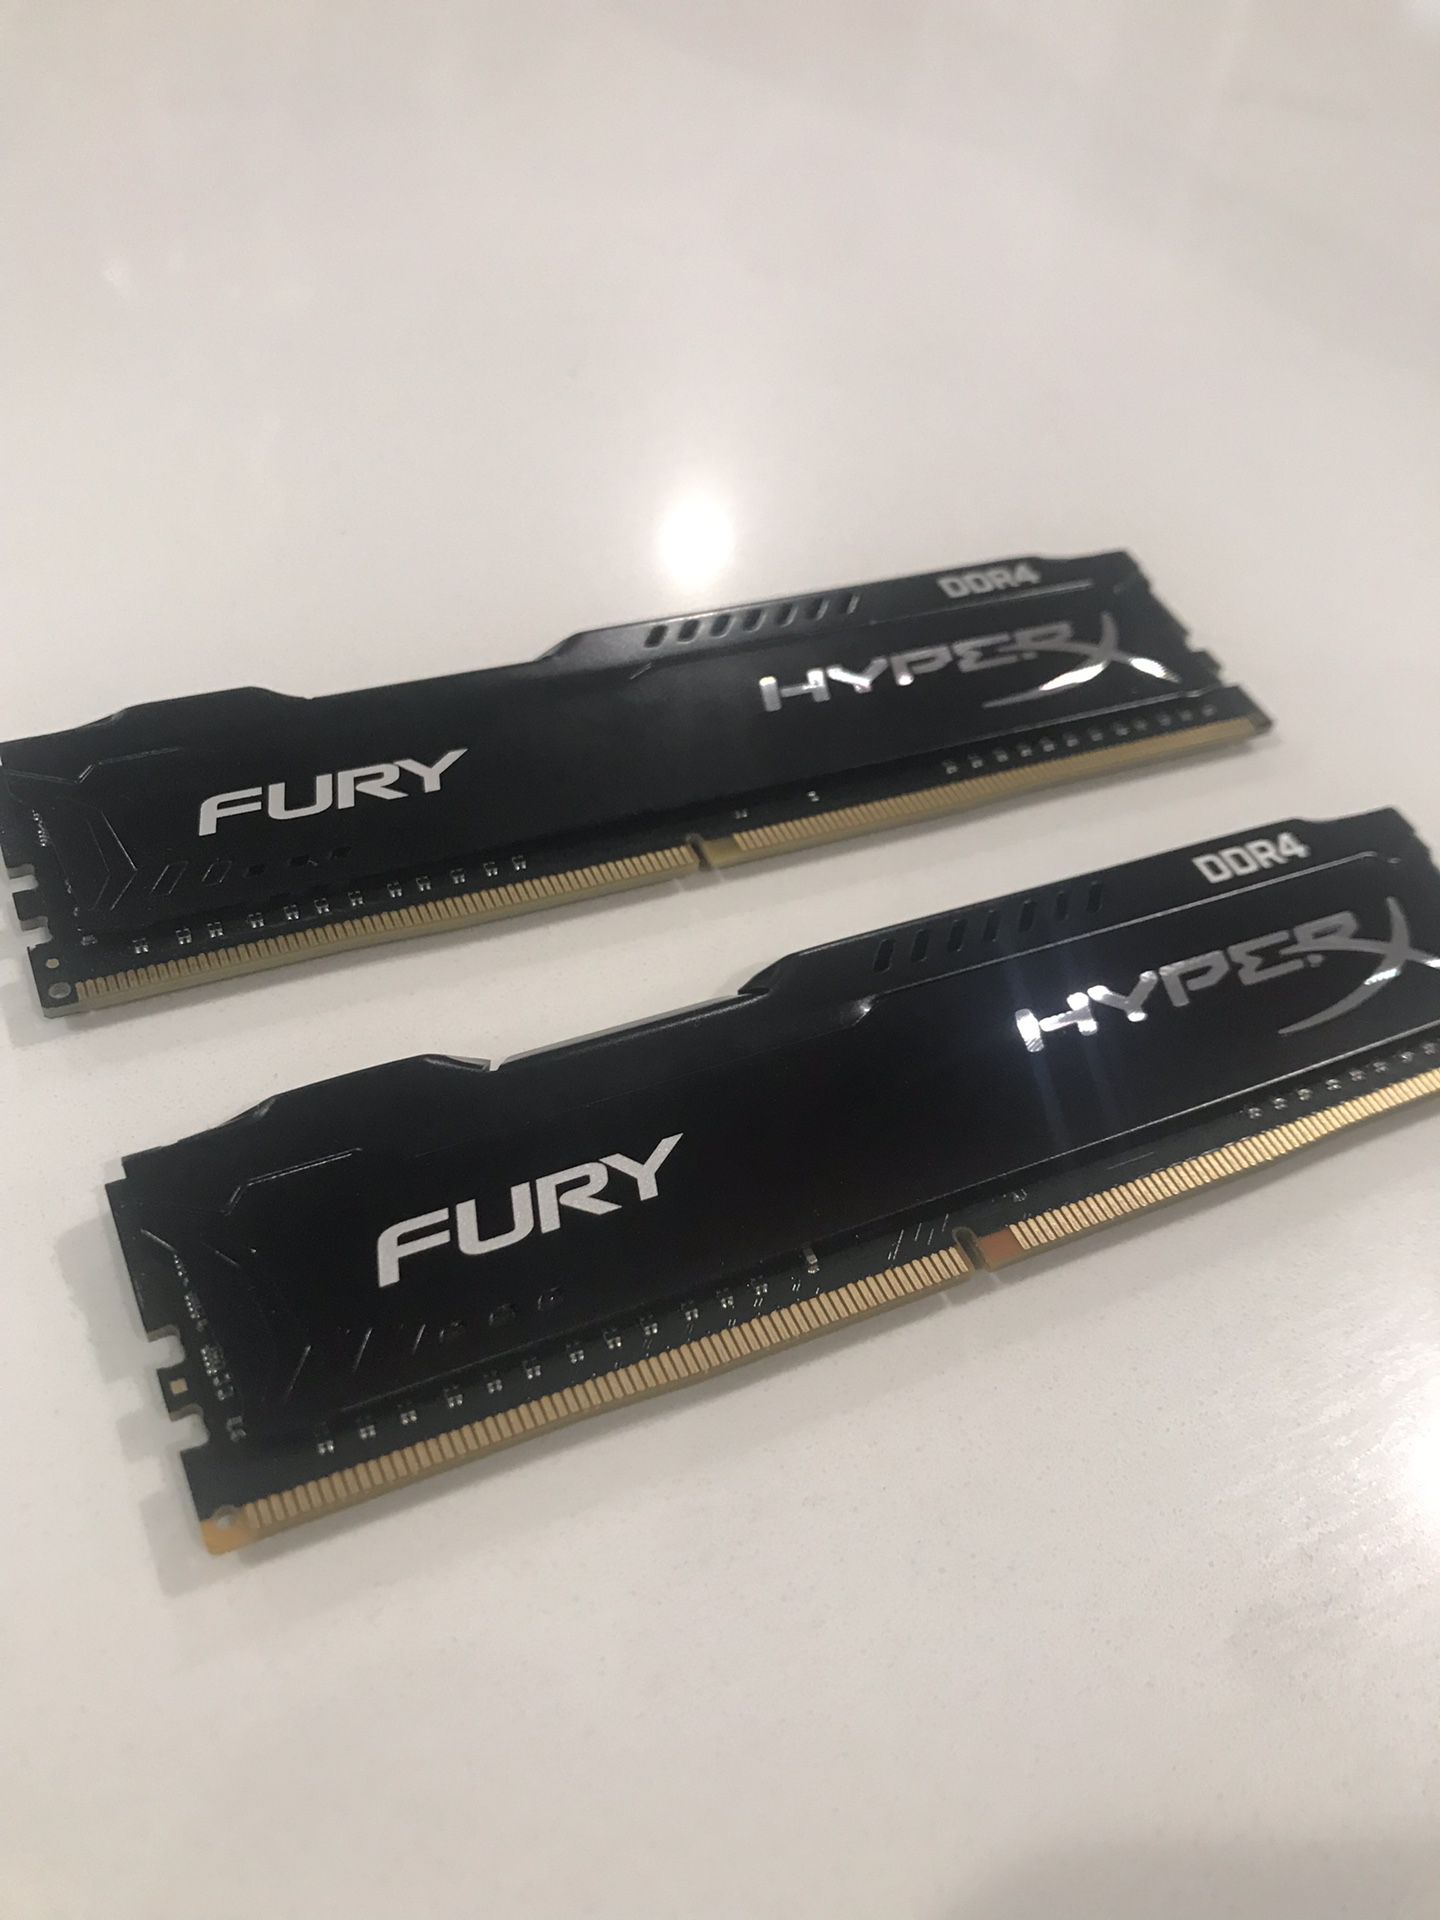 HyperX Fury DDR4 16gig 2x8 sticks 2133 ram